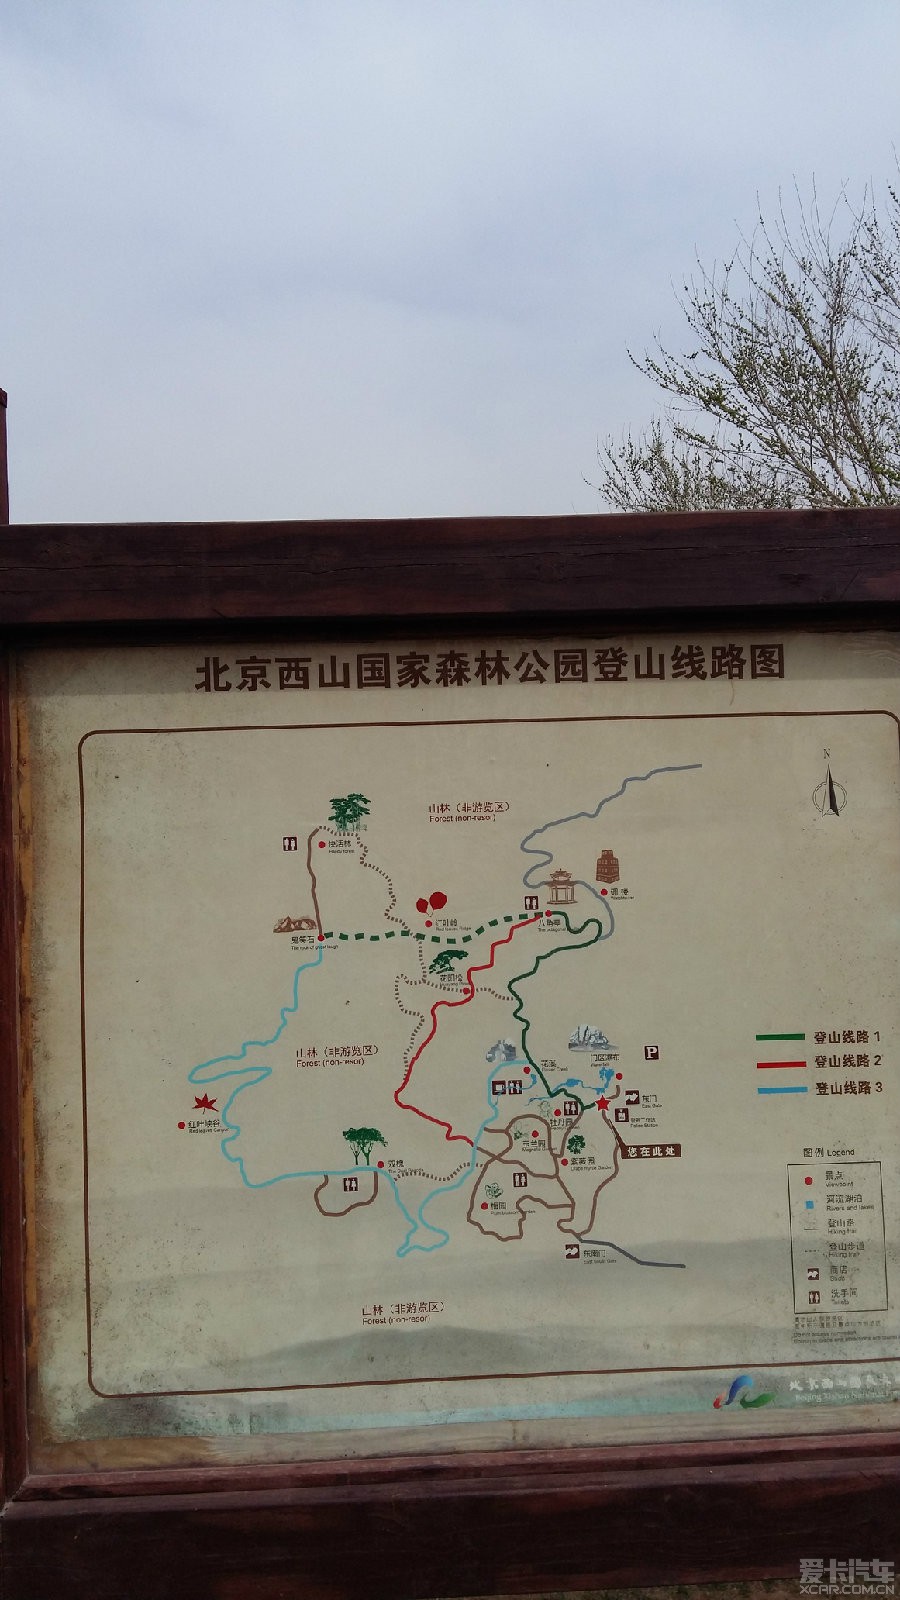 人在旅途,北京西山森林公园亦美丽_北京迈腾车